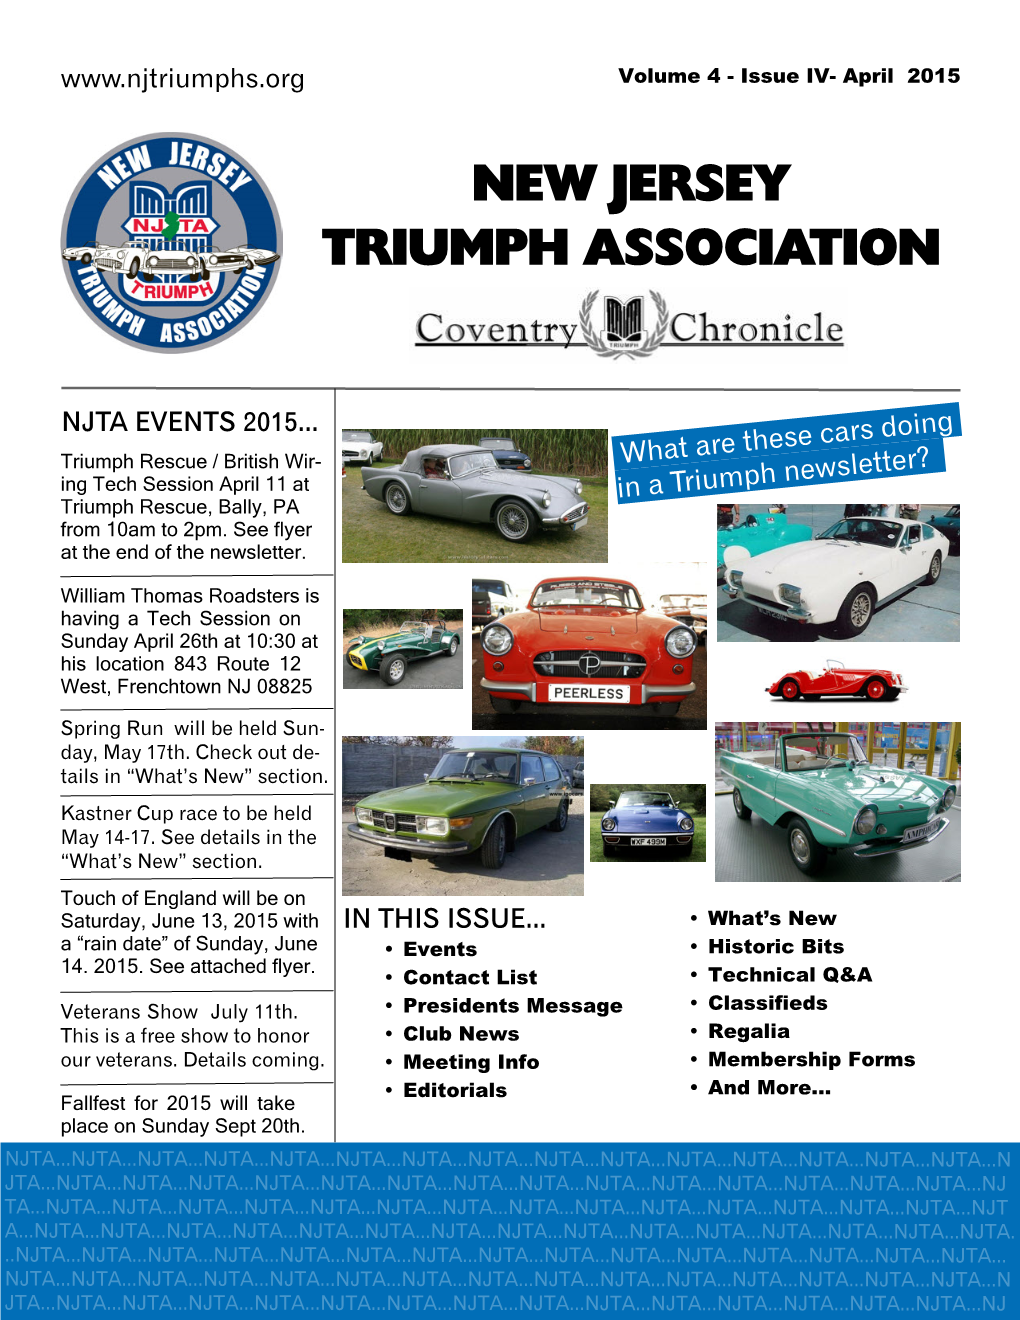 New Jersey Triumph Association